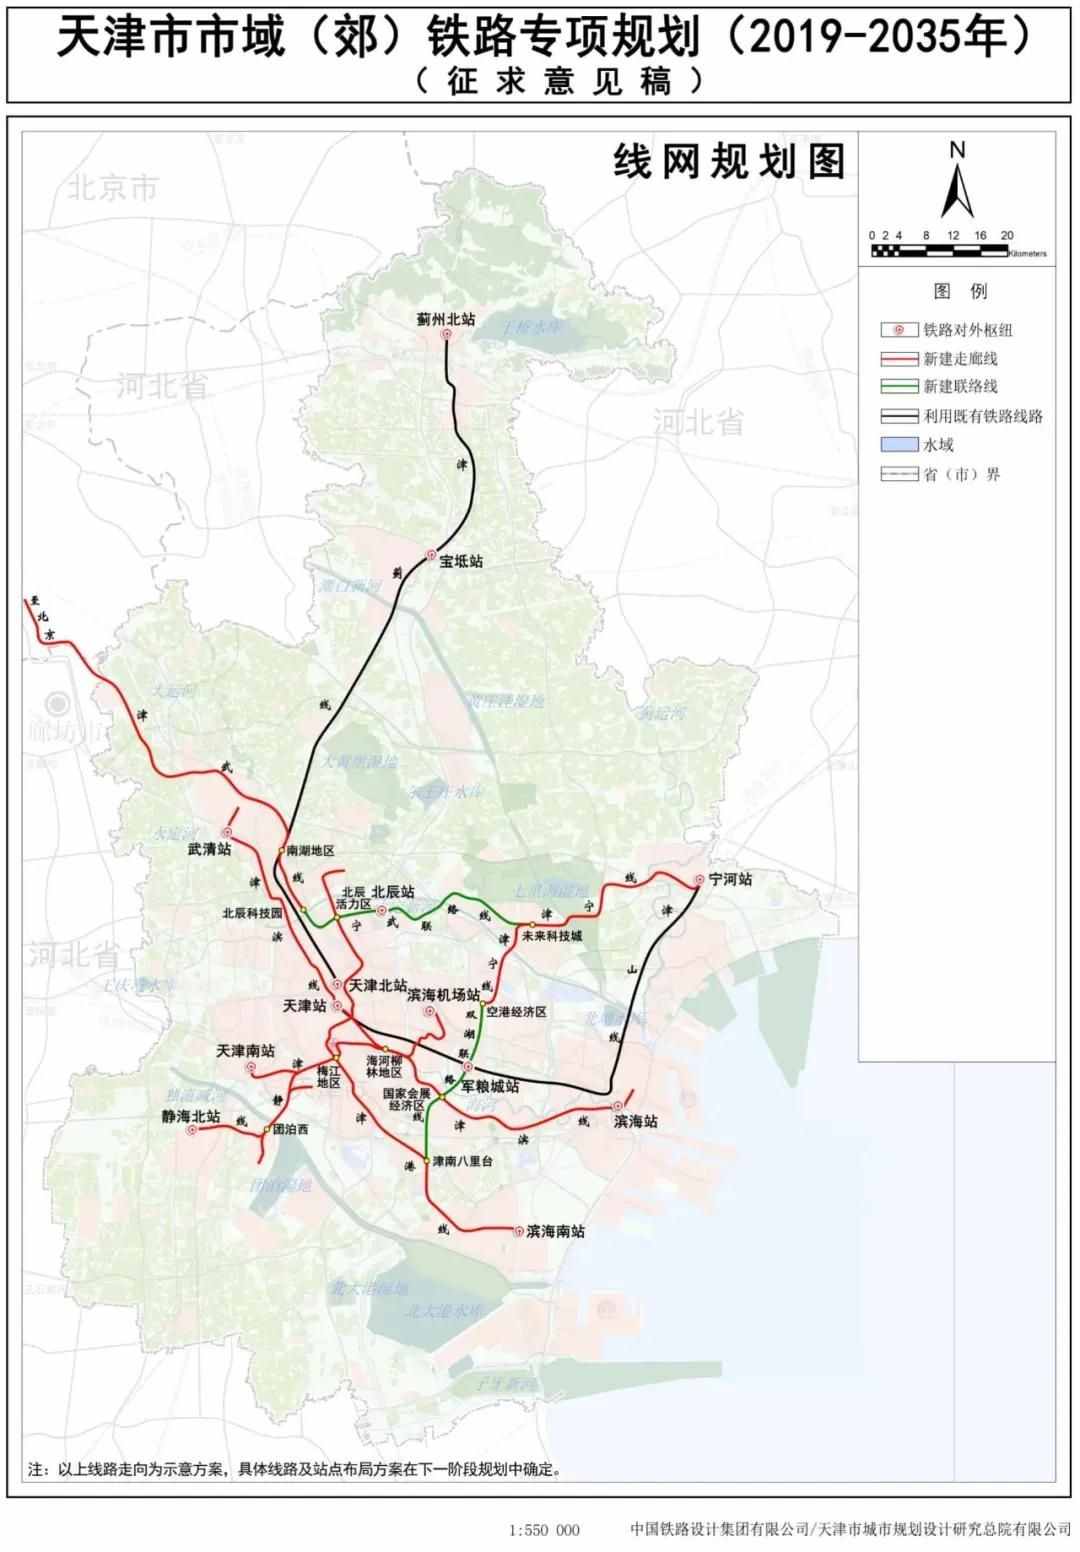 天津地铁、铁路现状与规划图